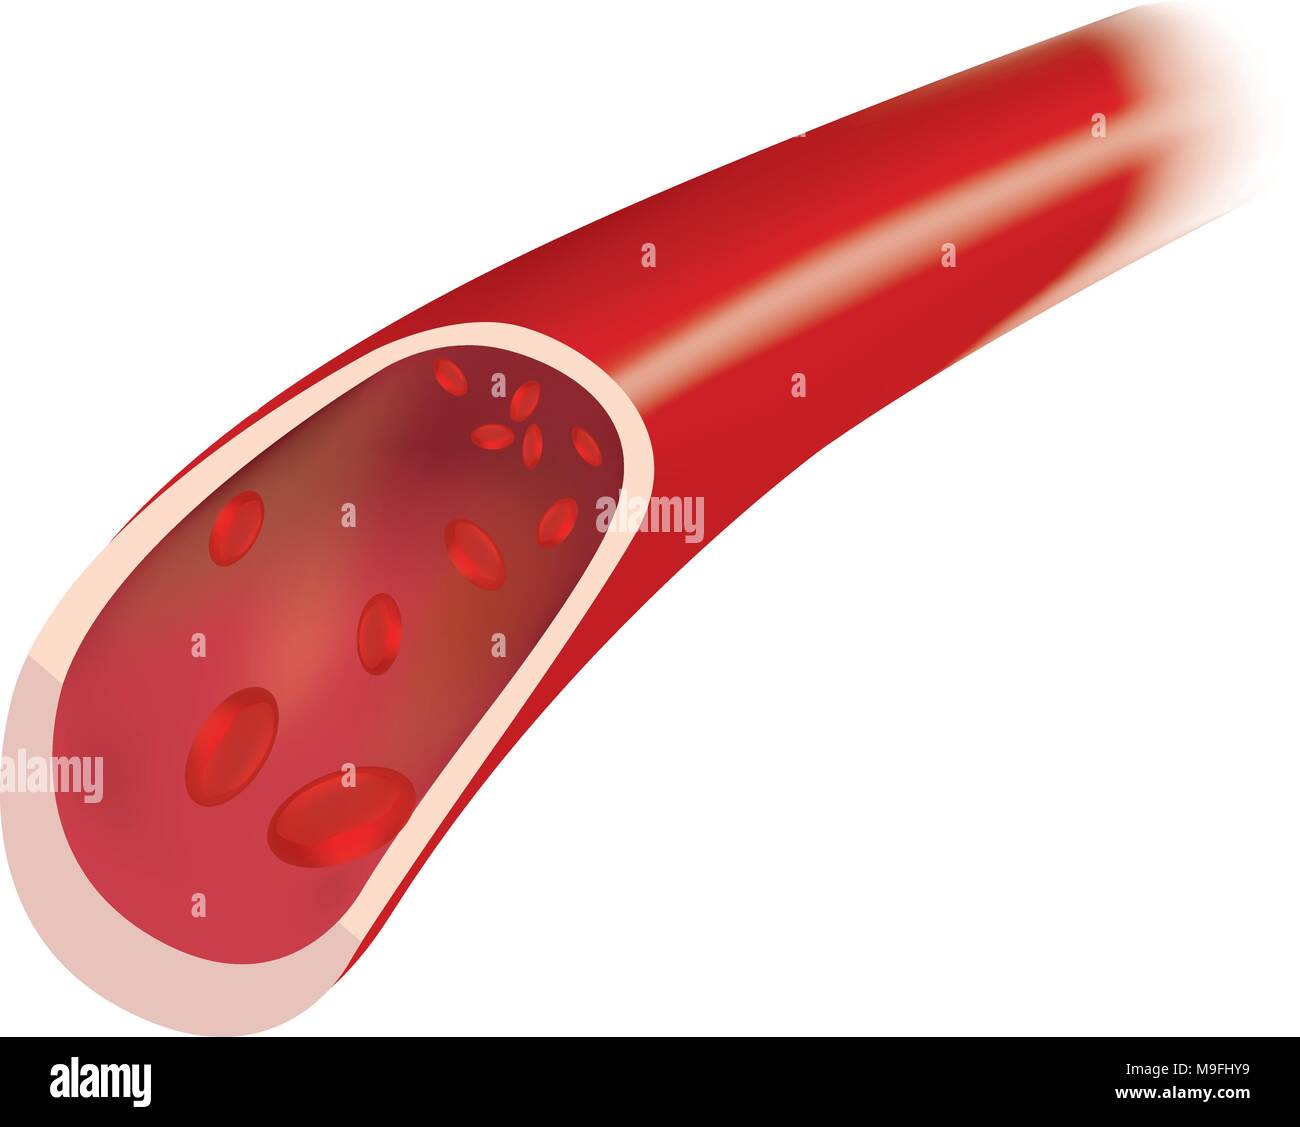 Angioplastica o angioplastica con palloncino) è una procedura endovascolare  per ampliare ristretto o arterie ostruite o vene, tipicamente per trattare  Antonio arteriosa Immagine e Vettoriale - Alamy